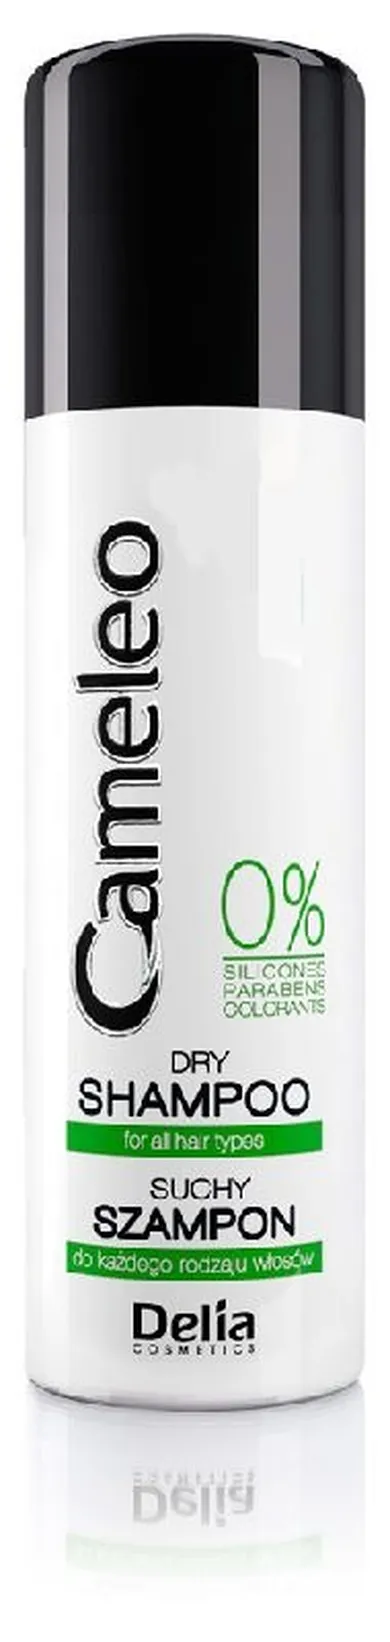 Delia Cosmetics, Cameleo, suchy szampon do włosów, 200 ml